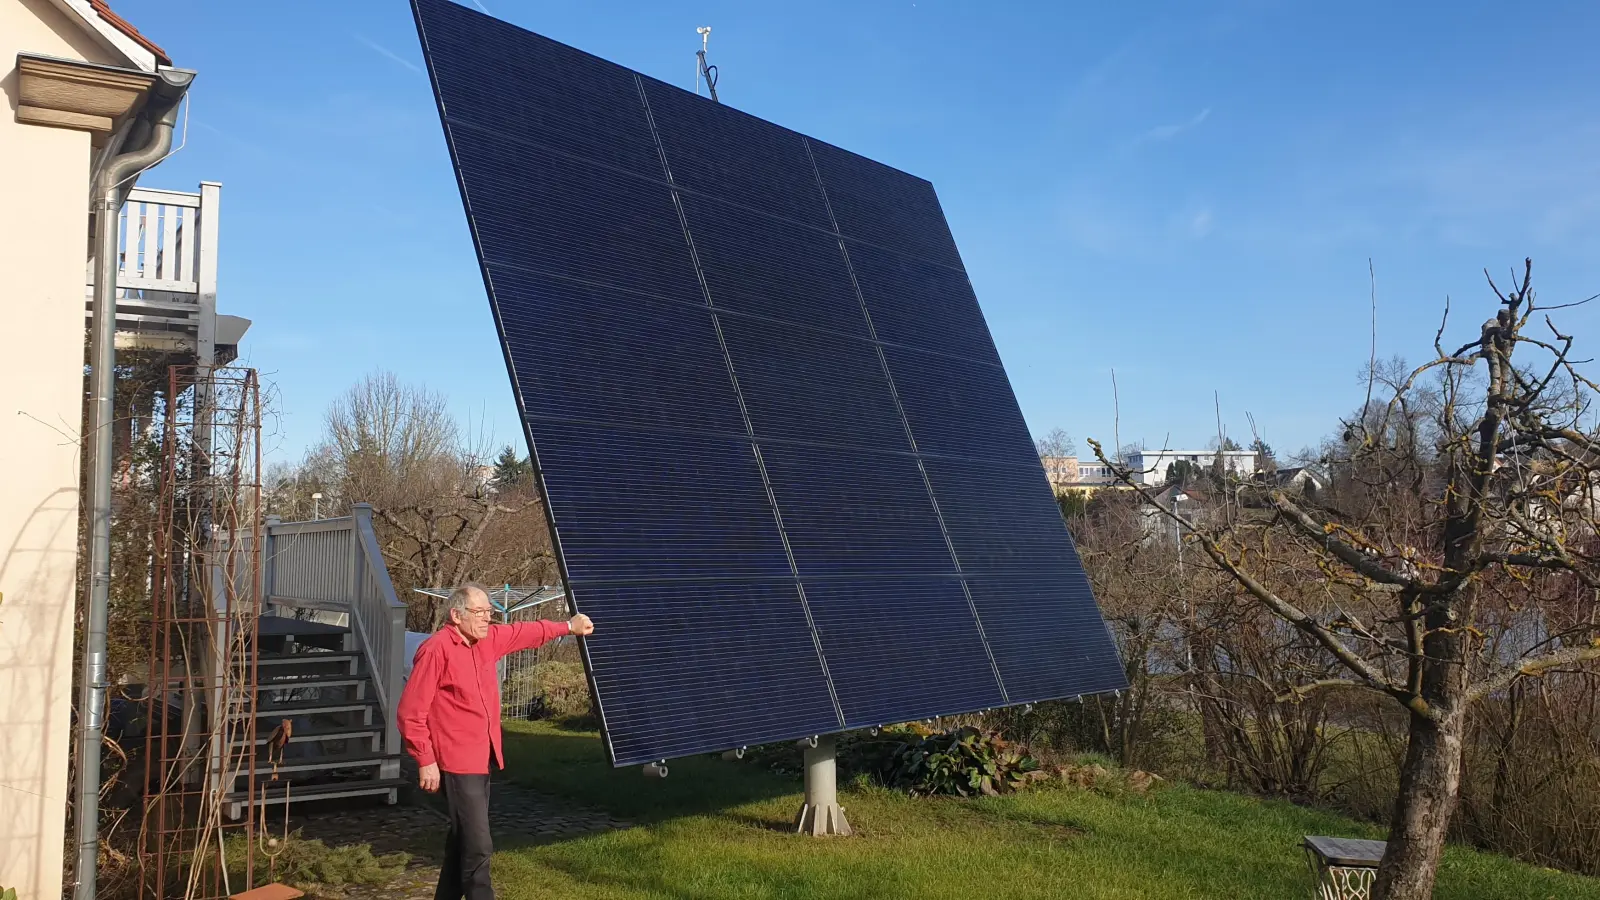 Geradezu winzig wirkt Tüftler Gerhard Schwab neben dem Photovoltaik-Segel in seinem Garten, das sich selbstständig nach der Sonne ausrichtet. Der Maschinenbauer hat die Technik selbst verfeinert. (Foto: Wolfgang Grebenhof)